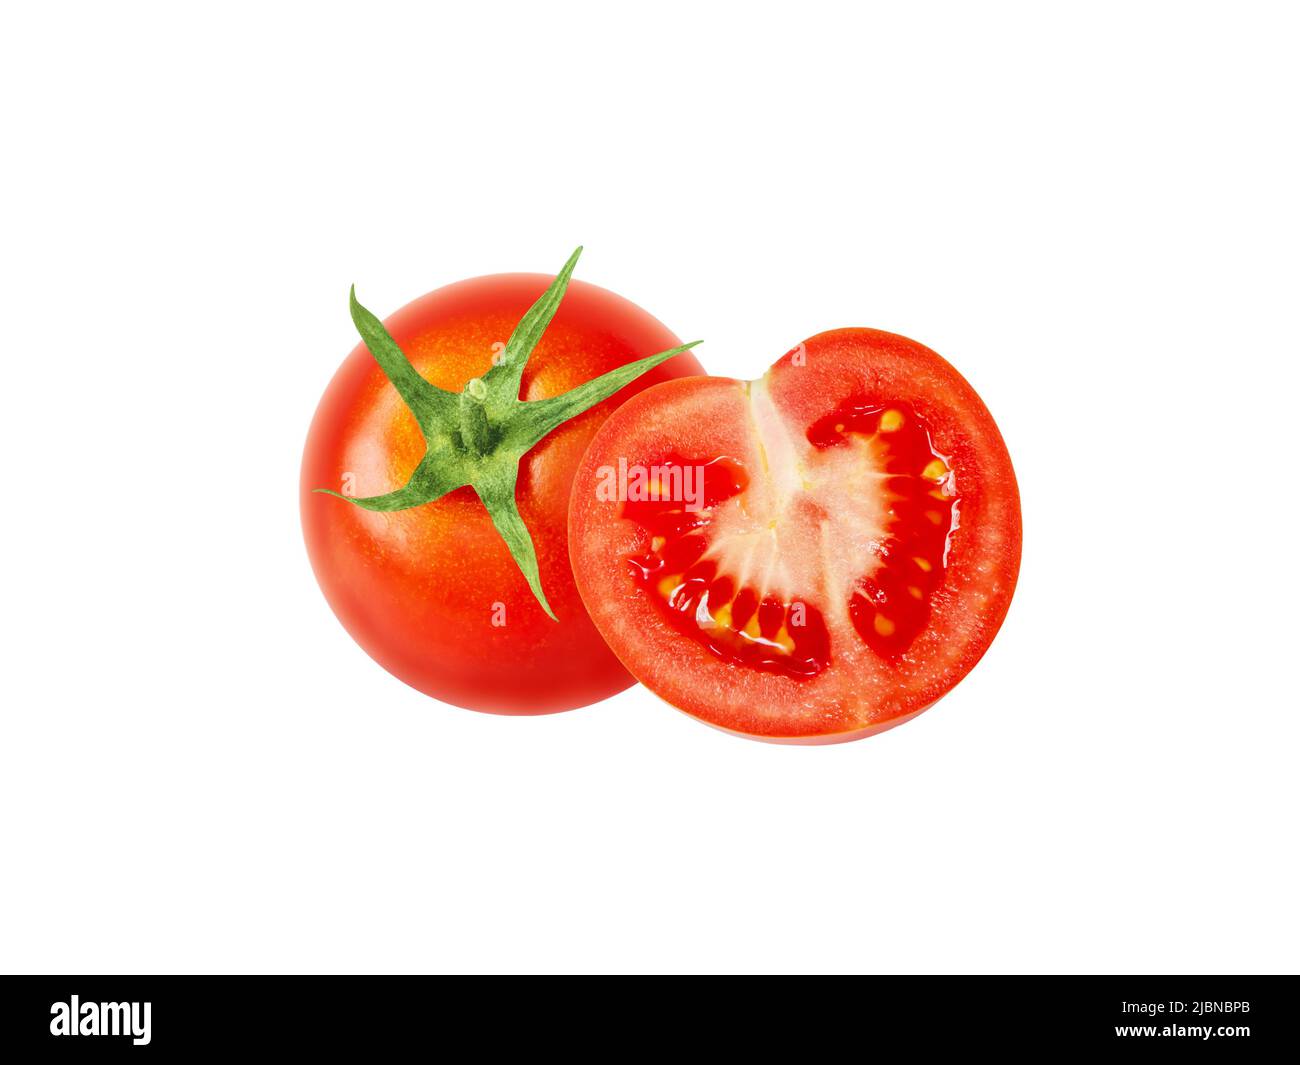 Verdure rosse intere e tagliate a metà, isolate su sfondo bianco. Solanum lycopersicum frutta matura. Foto Stock